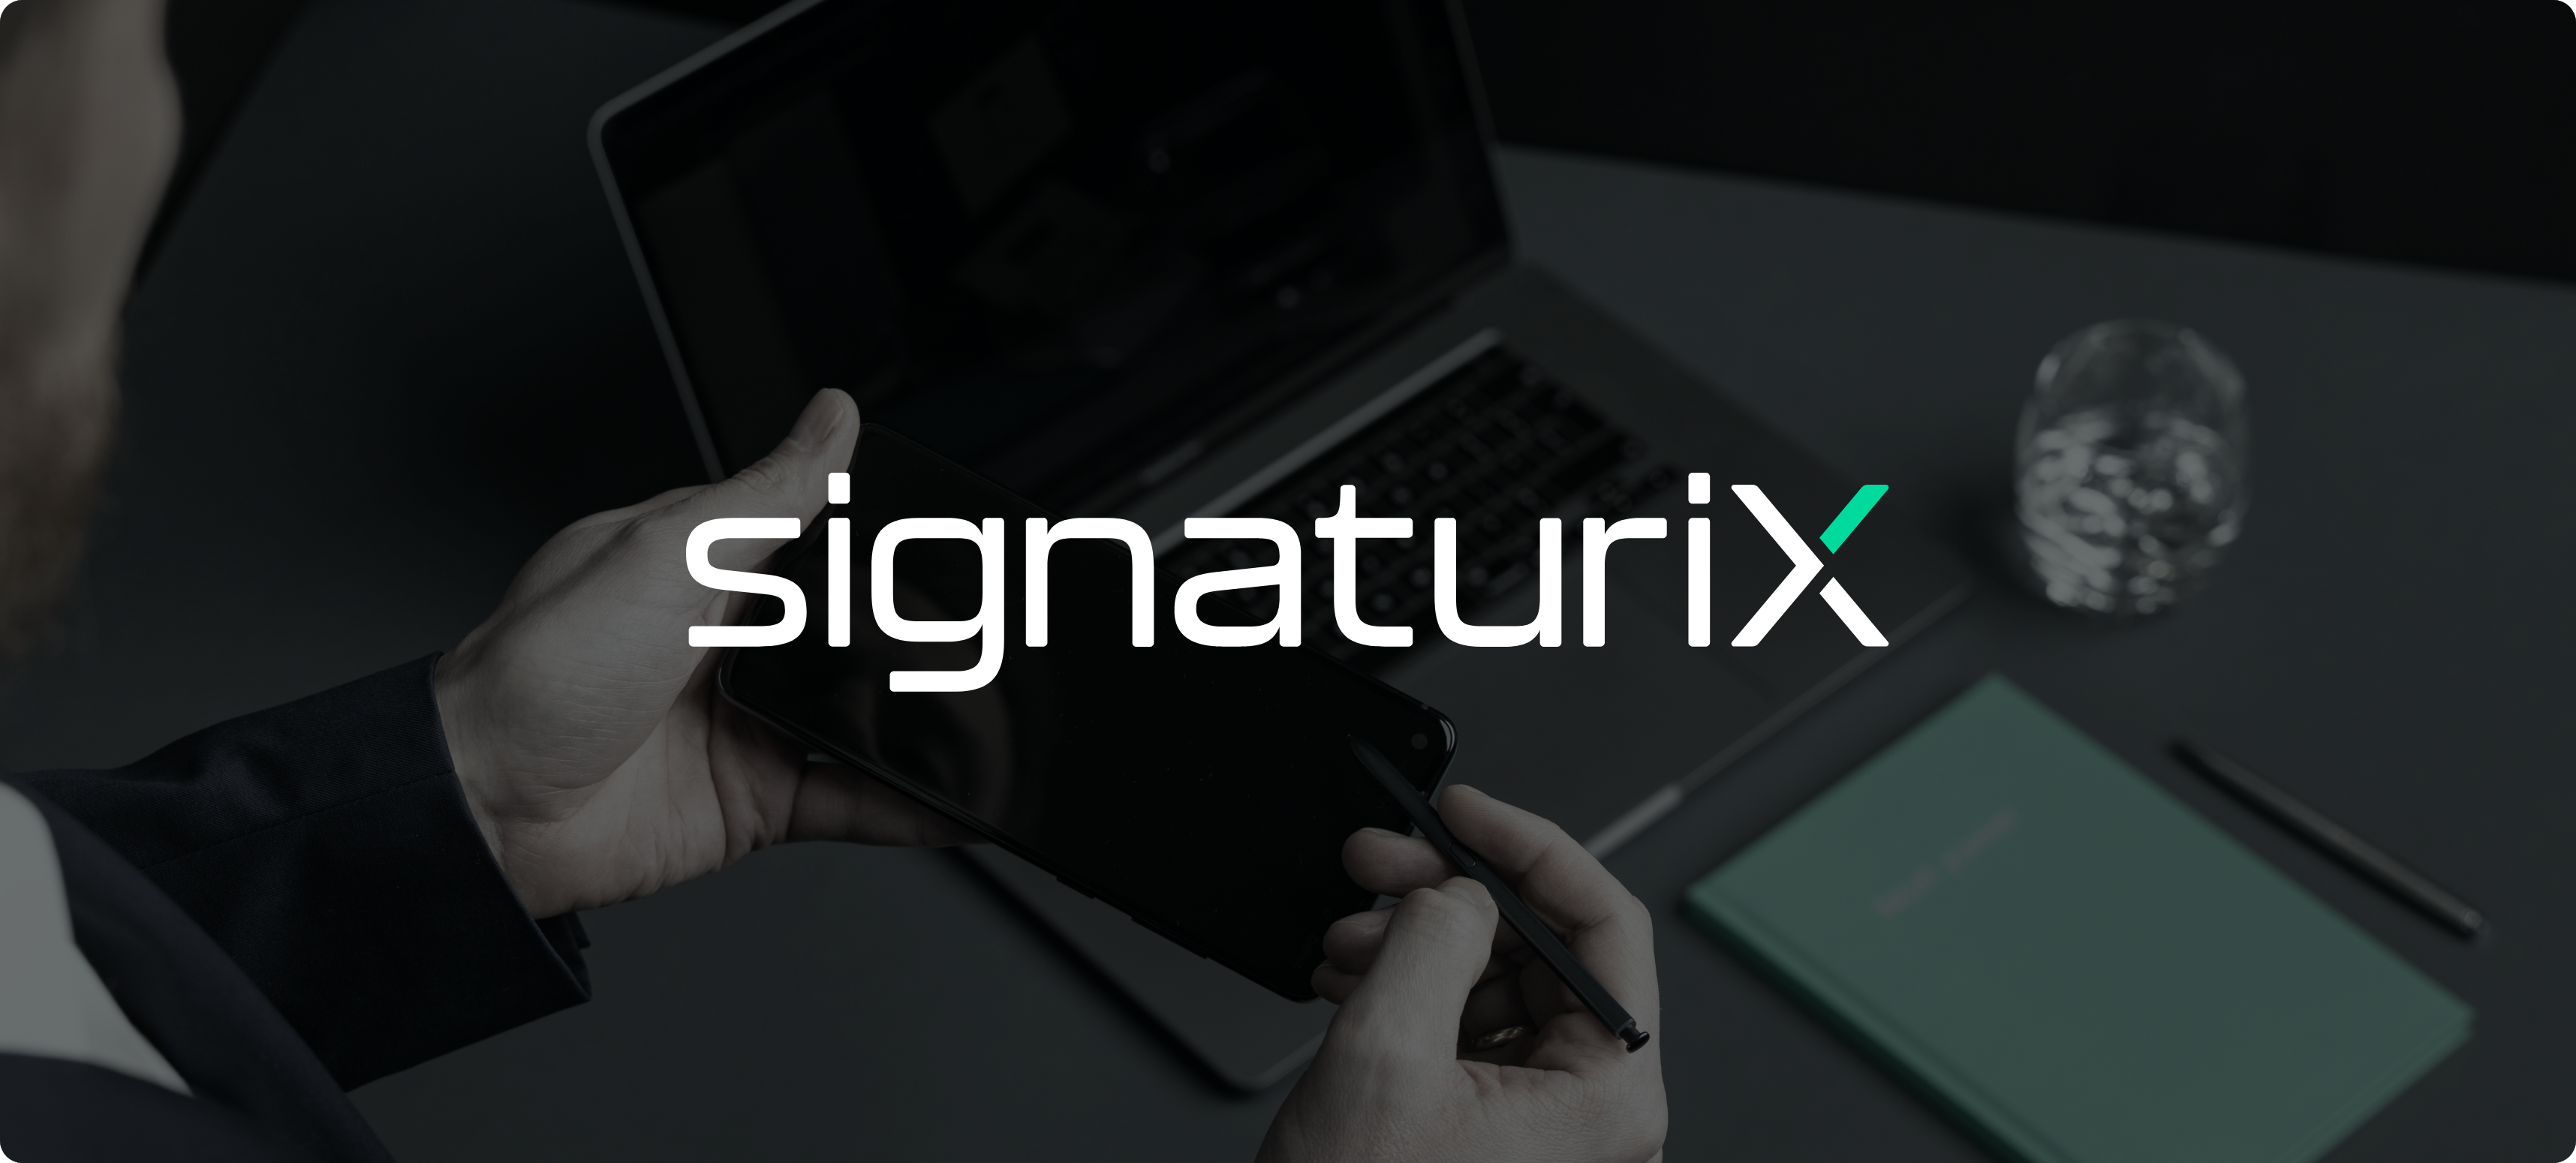 Zobacz nową identyfikację wizualną odręcznego podpisu elektronicznego signaturiX.